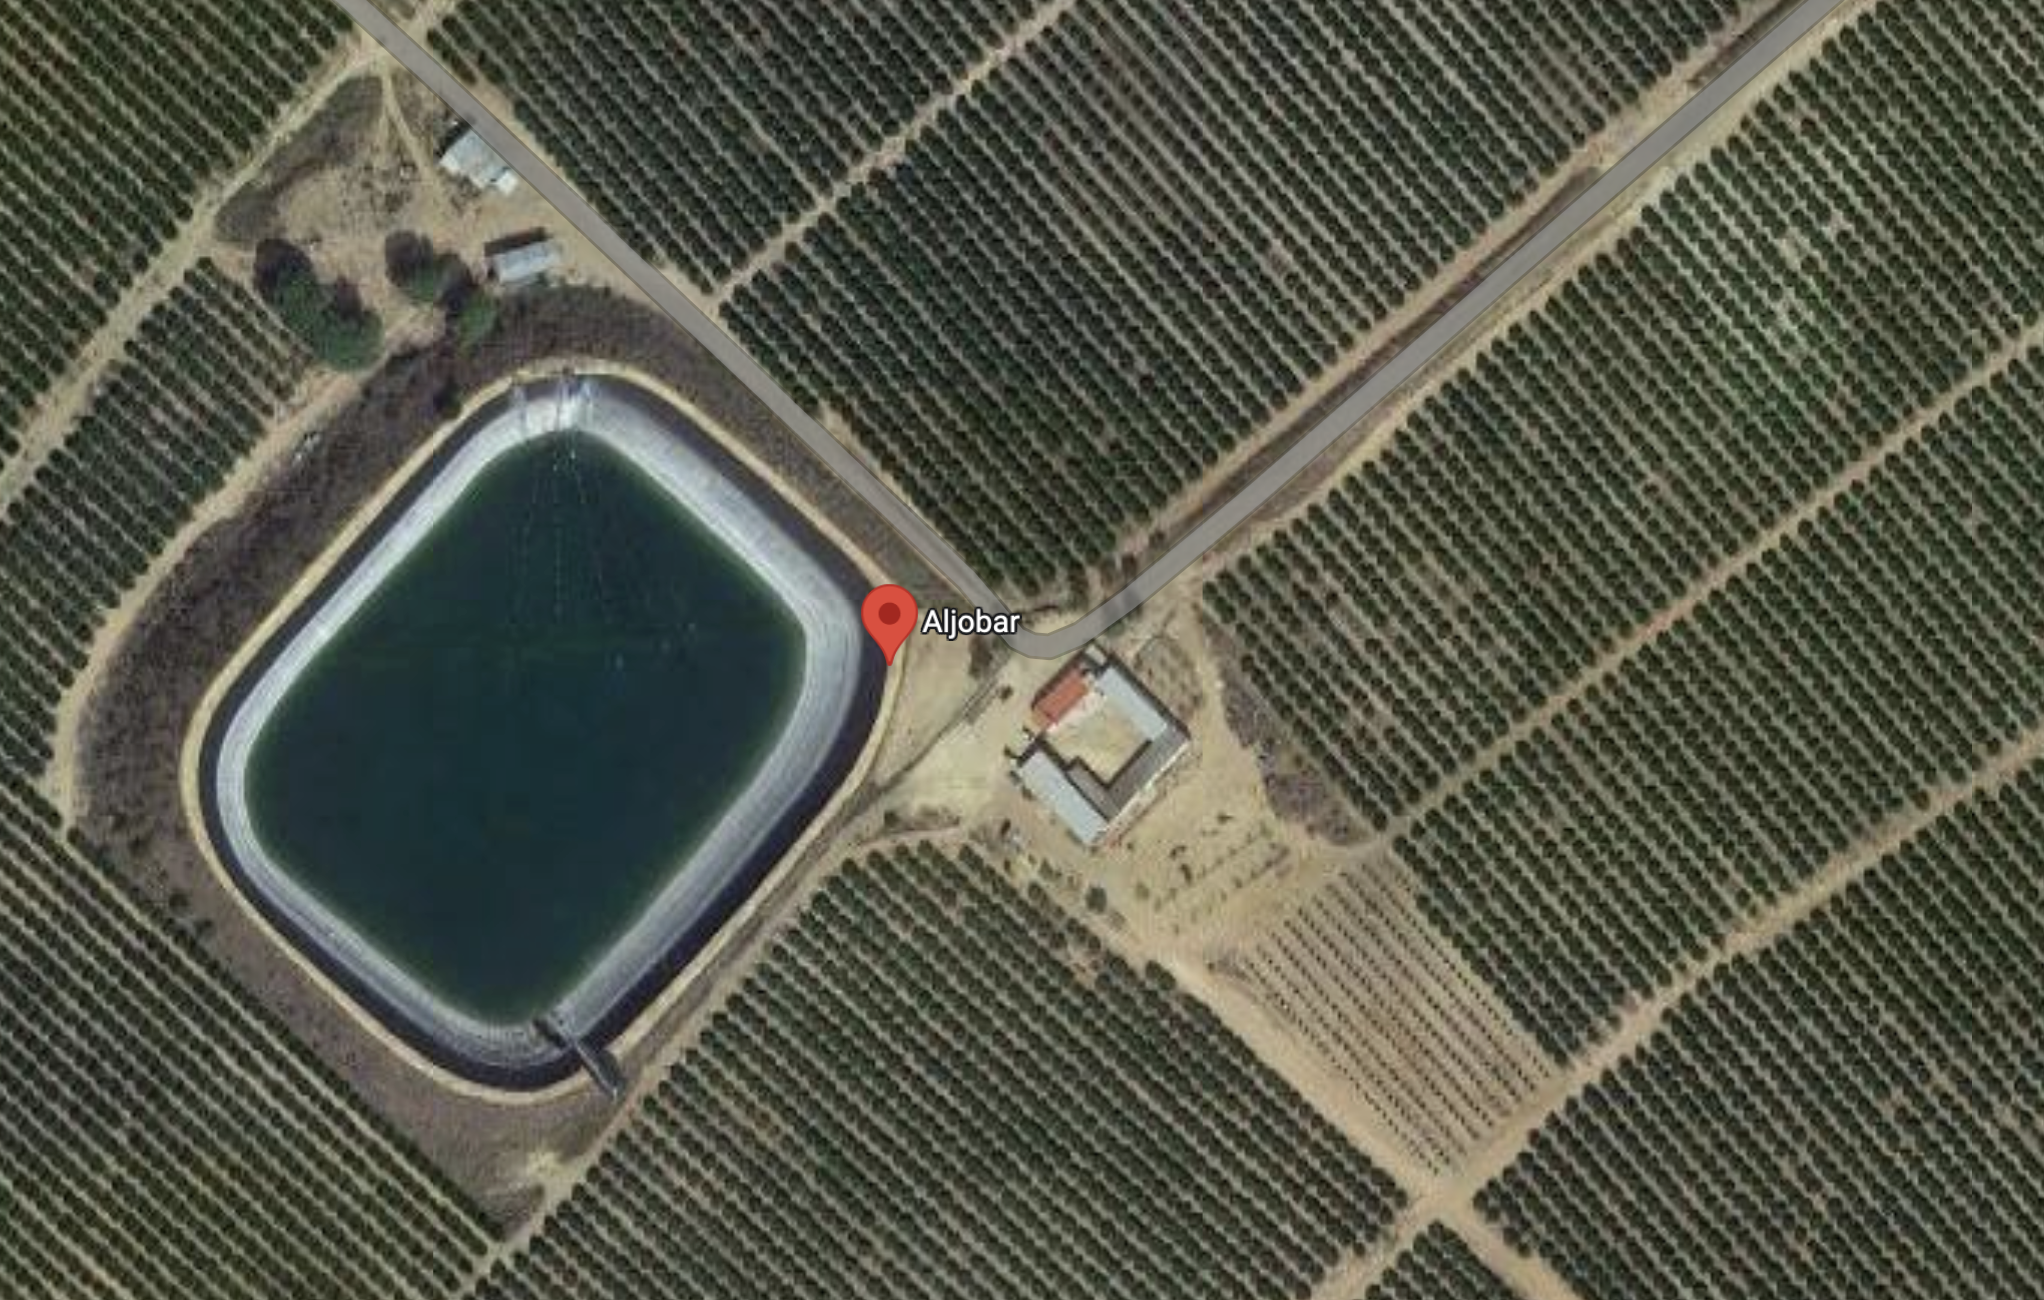 Finca de Aljóbar, en Aznalcazar, Sevilla, donde presuntamente hay ocho pozos ilegales que han estado robando agua, en una imagen de satélite de Google.